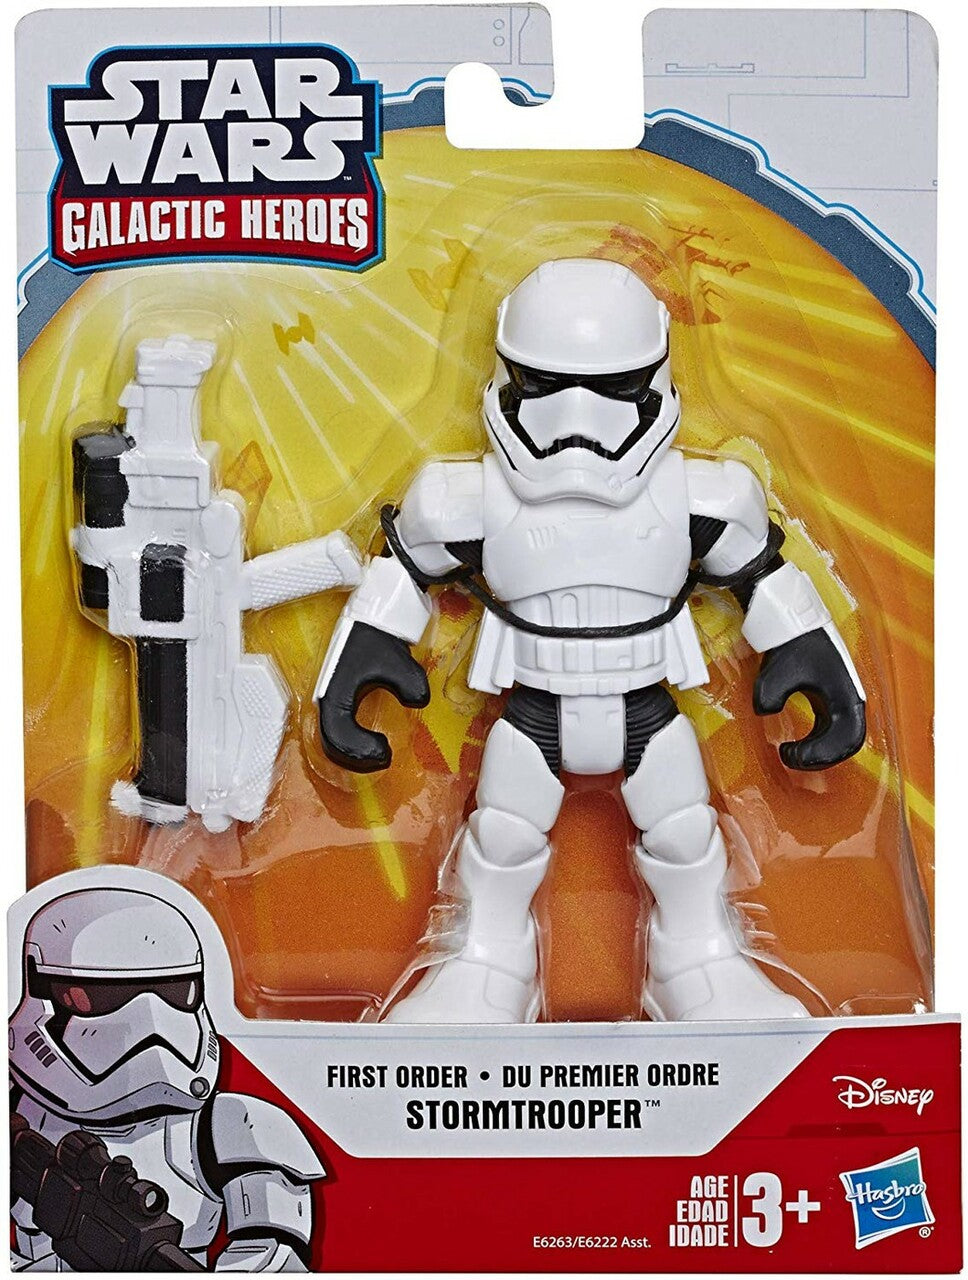 Star Wars Galactic Heroes First Order Stormtrooper Mini Figure